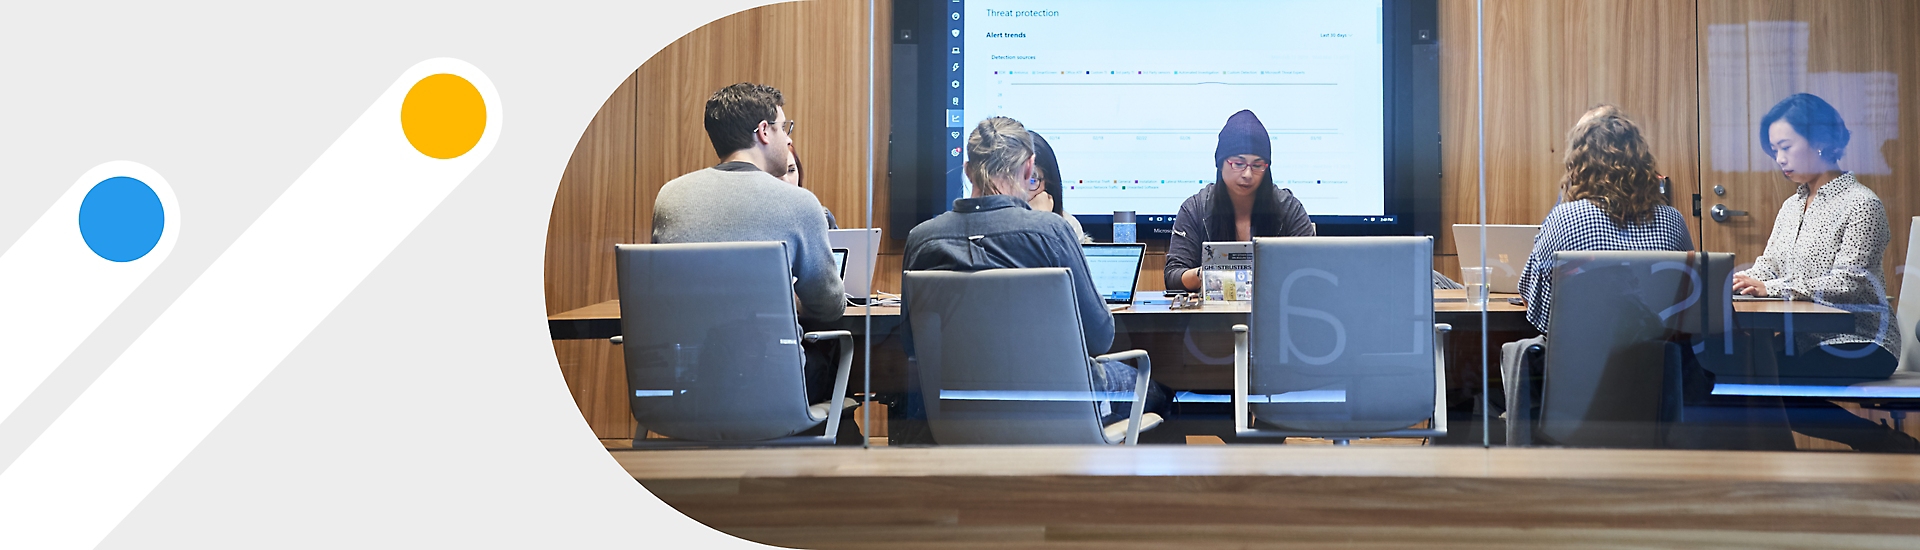 Eine Besprechung mit sieben Personen in einem Konferenzraum, an dessen Rückwand ein Großbildschirm mit Notizen in Teams dargestellt ist